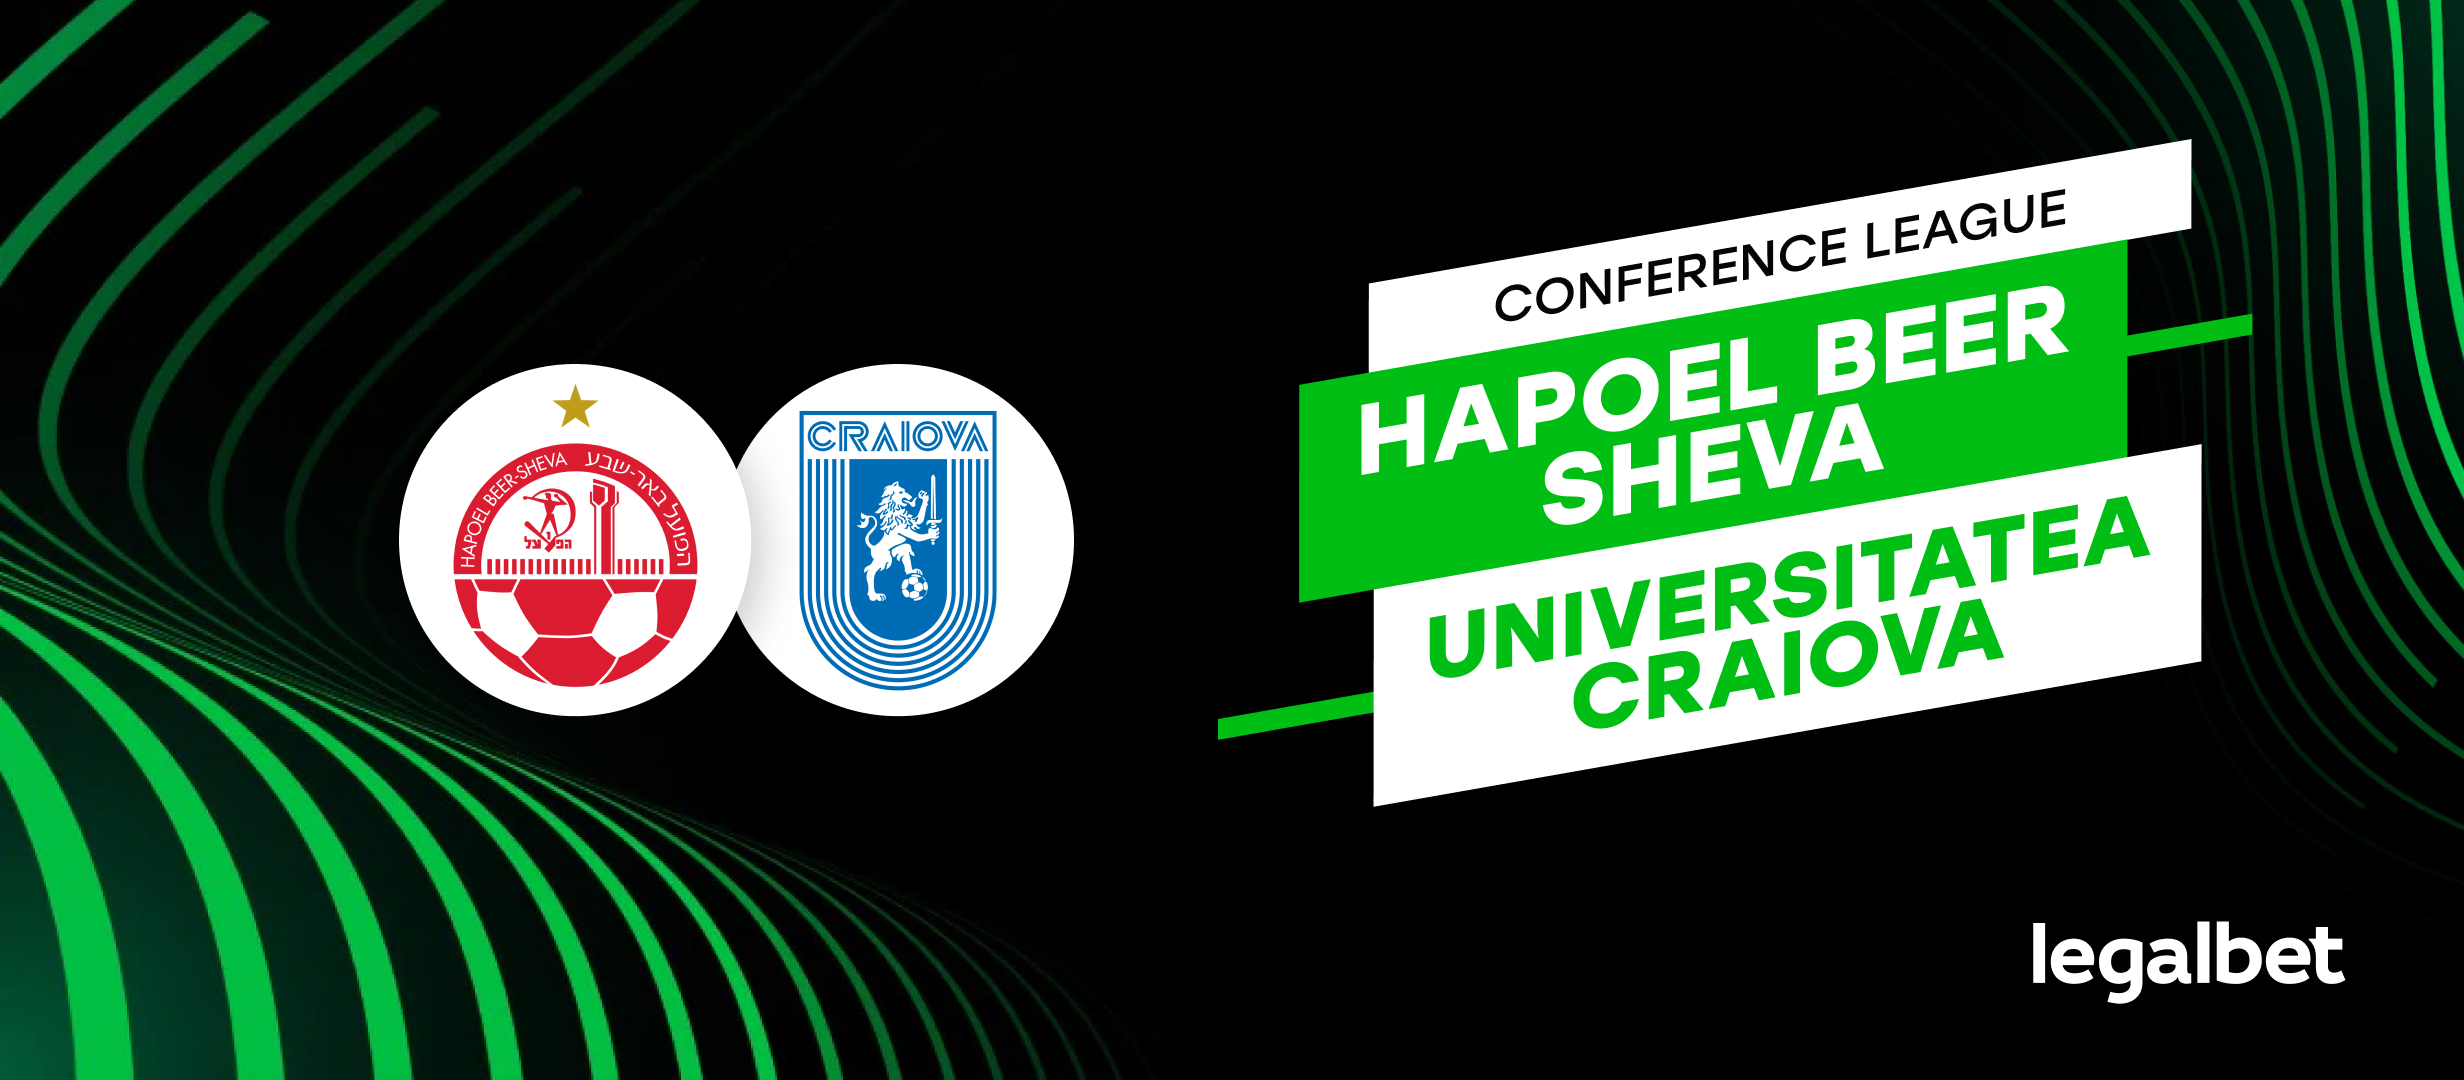 Hapoel Beer Sheva - Universitatea Craiova | Cote la pariuri, ponturi si informatii